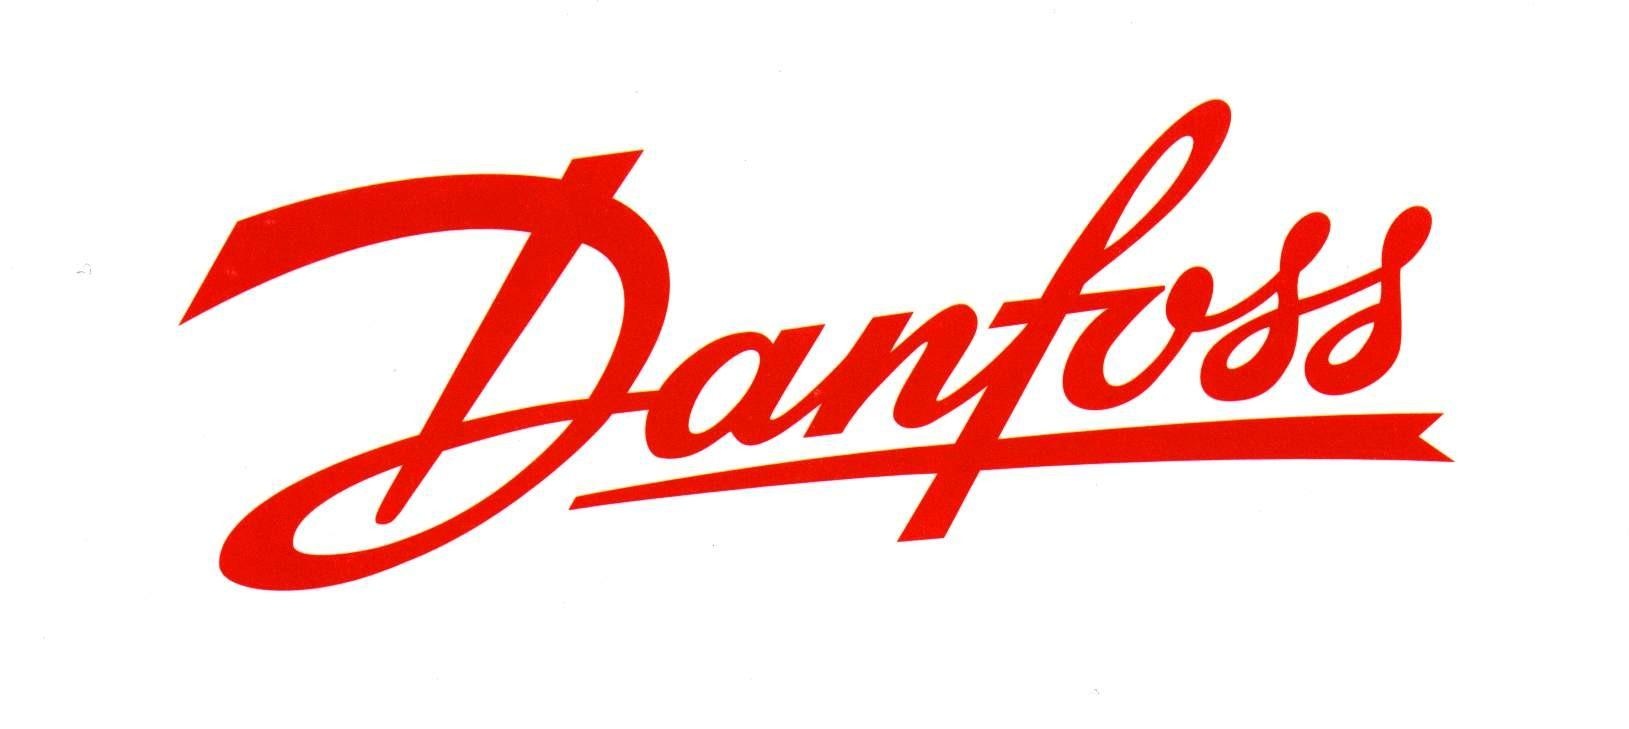 Imagen de la empresa Danfoss a la que se le ofrecen los descuentos